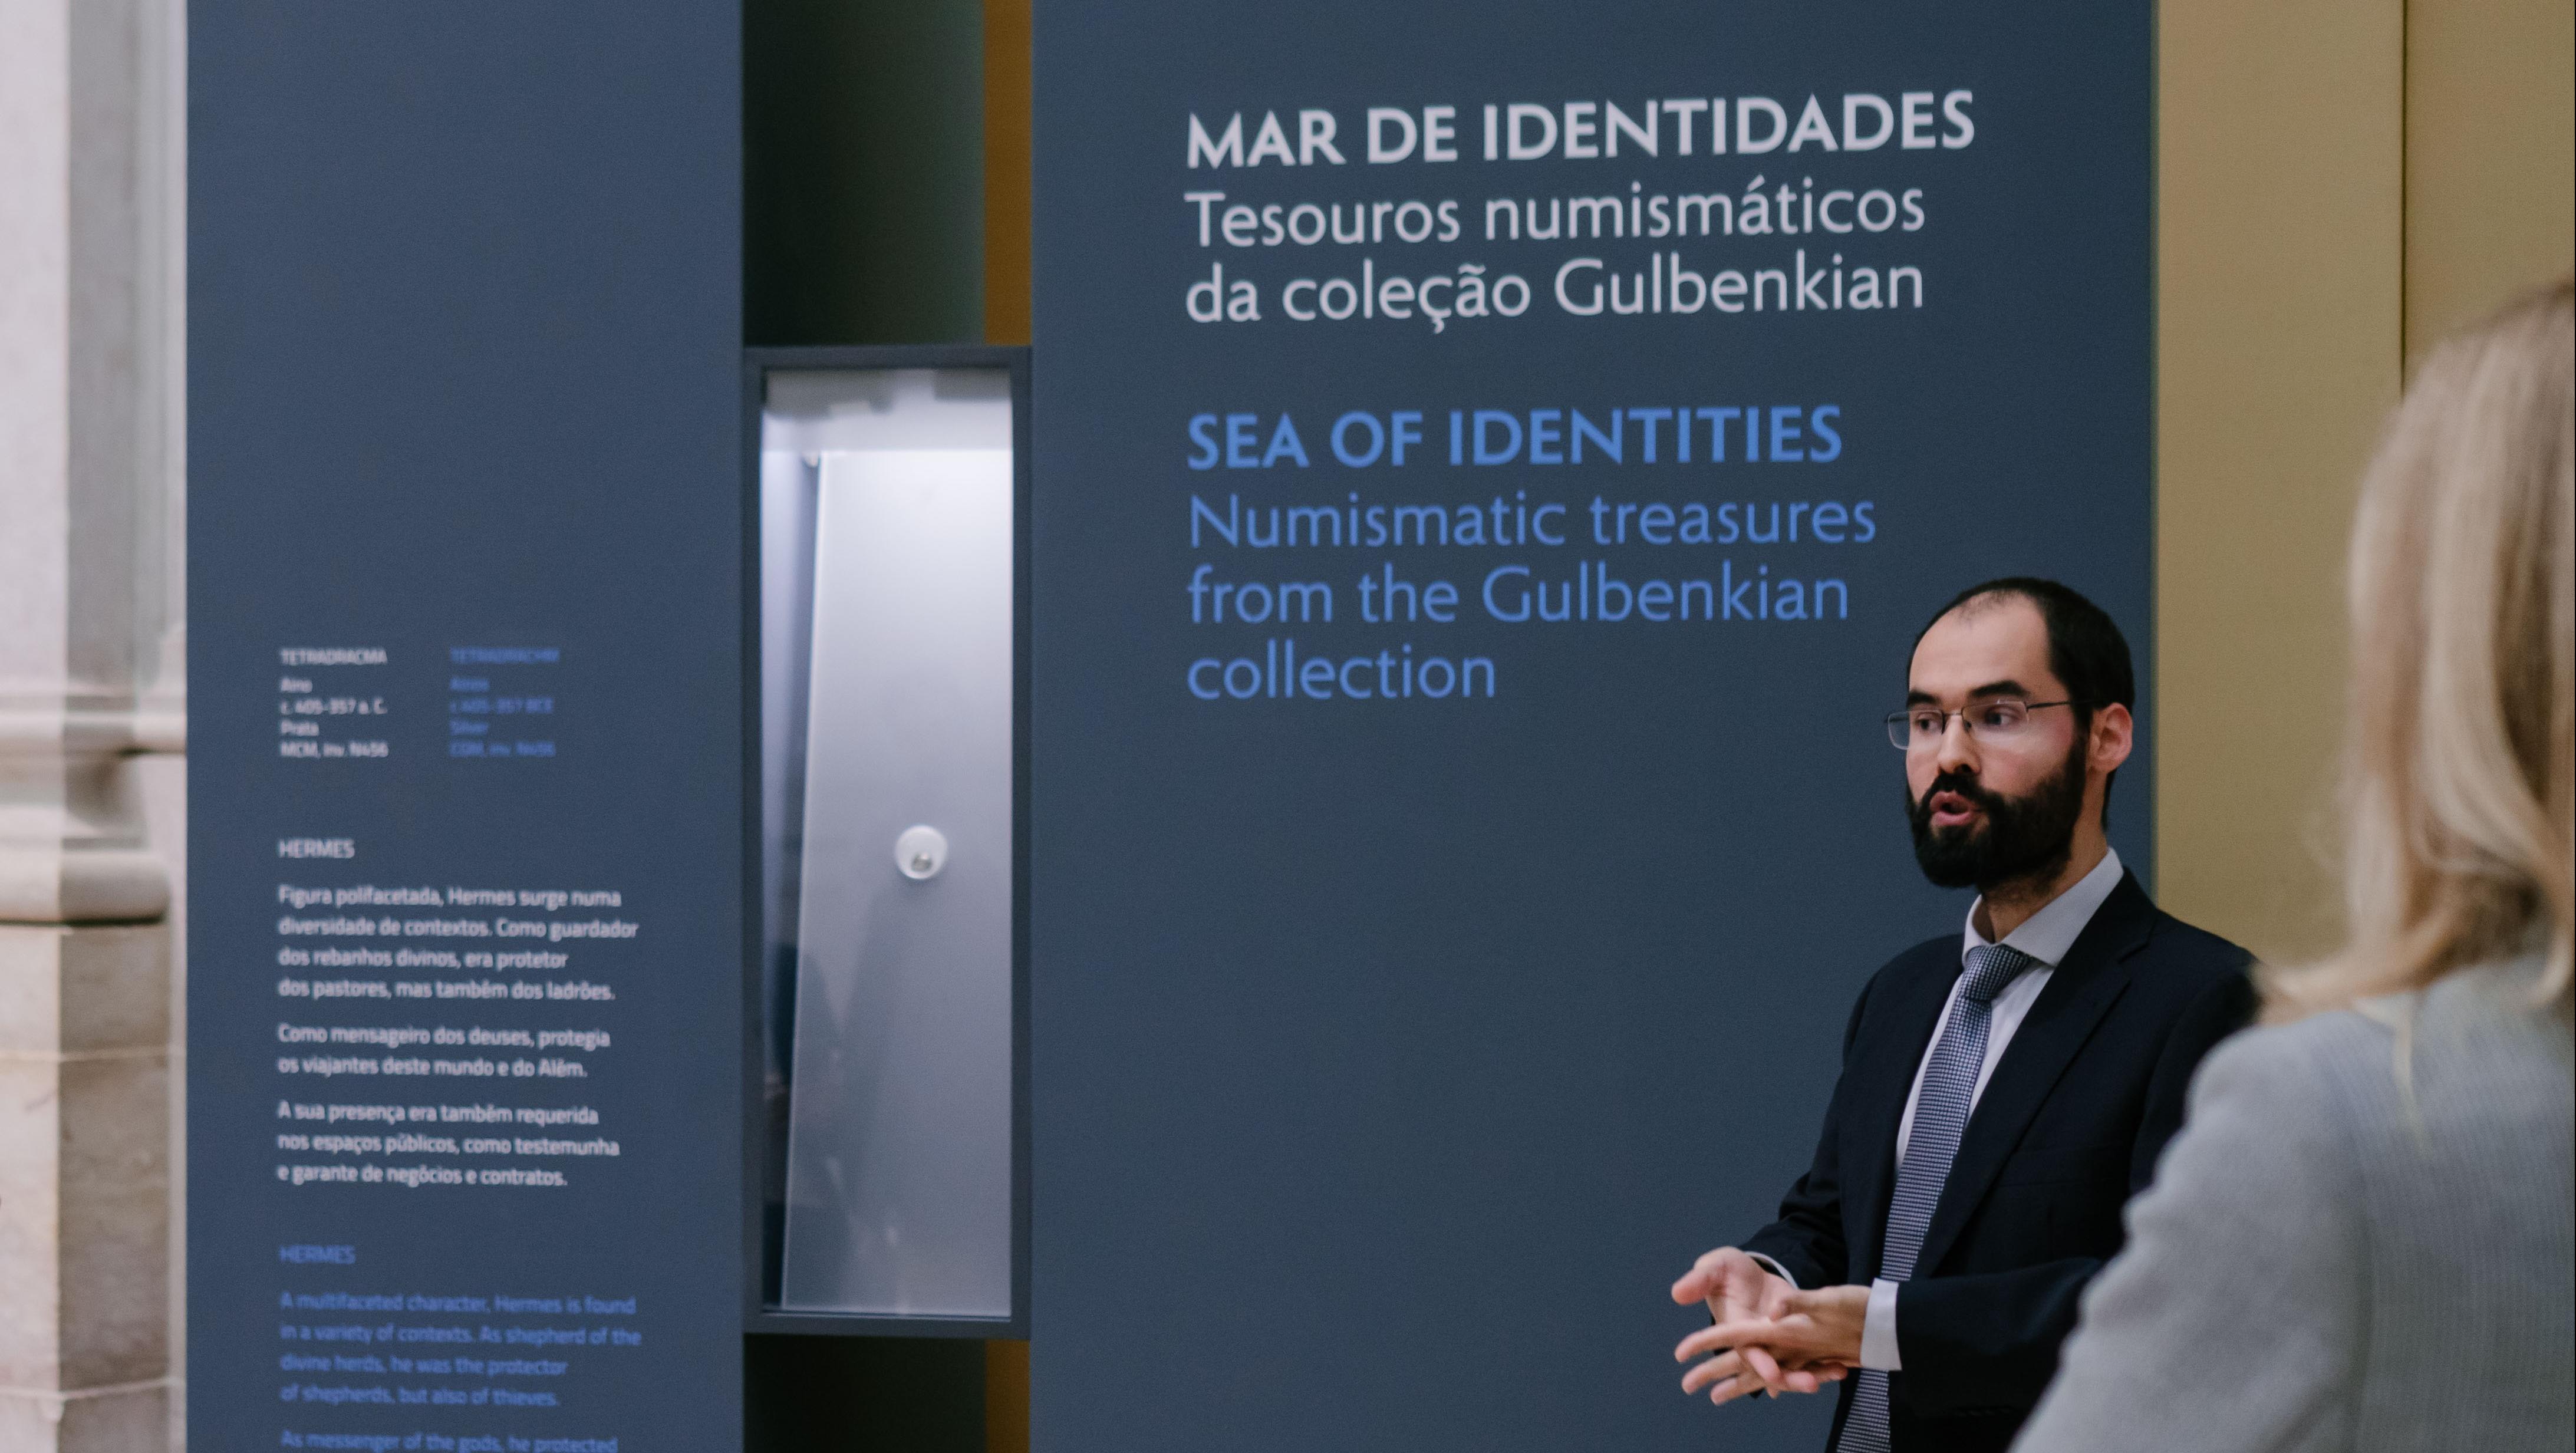 Curador da exposição "Mar de identidades" orienta a visita à exposição tendo como pano de fundo um das vitrines da exposição